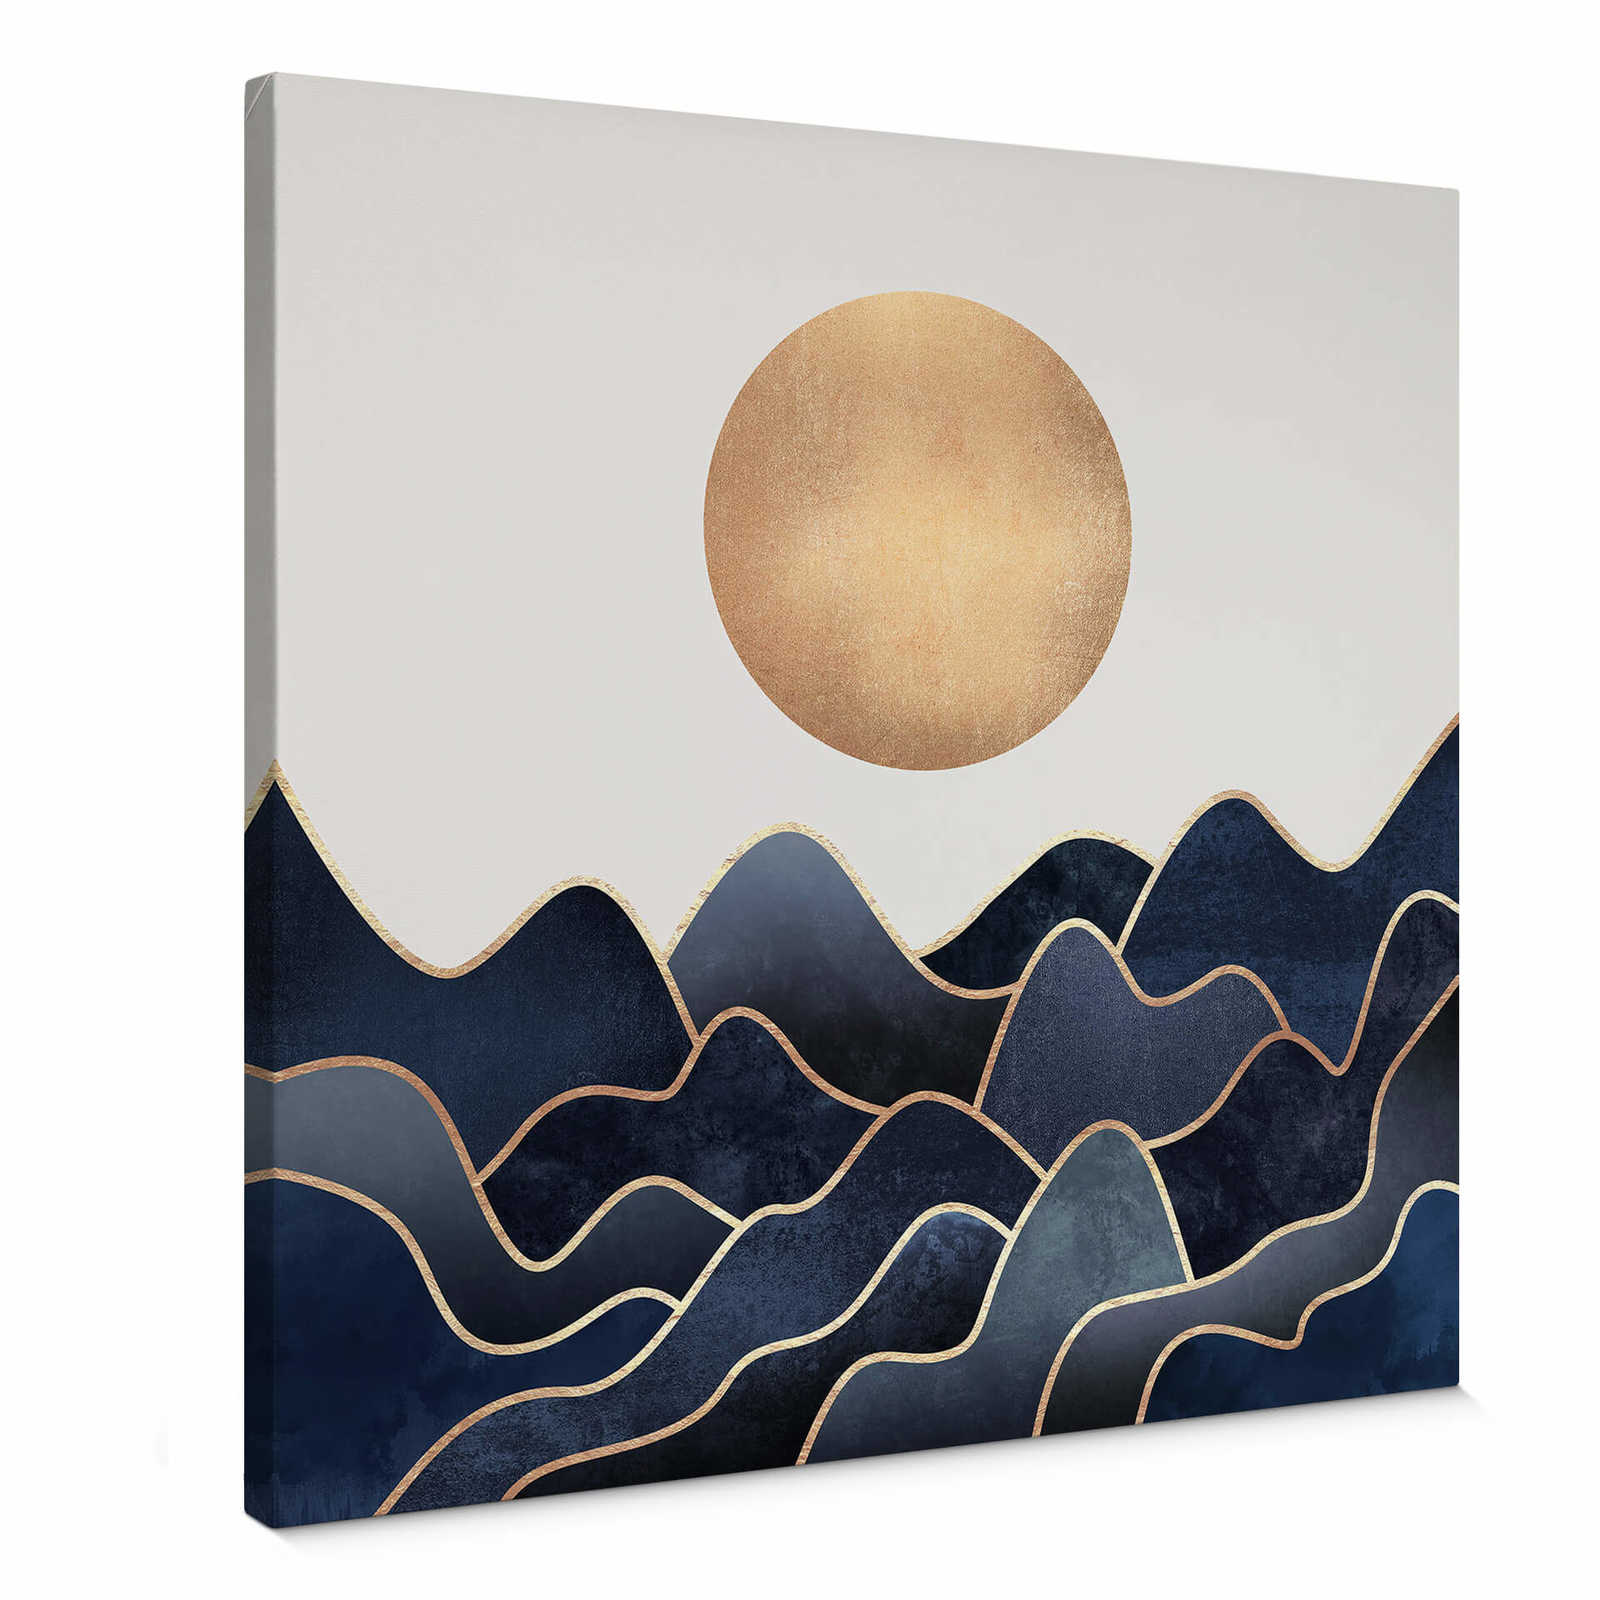         Keilrahmenbild Wellen & Sonne von Fredriksson – 0,50 m x 0,50 m
    